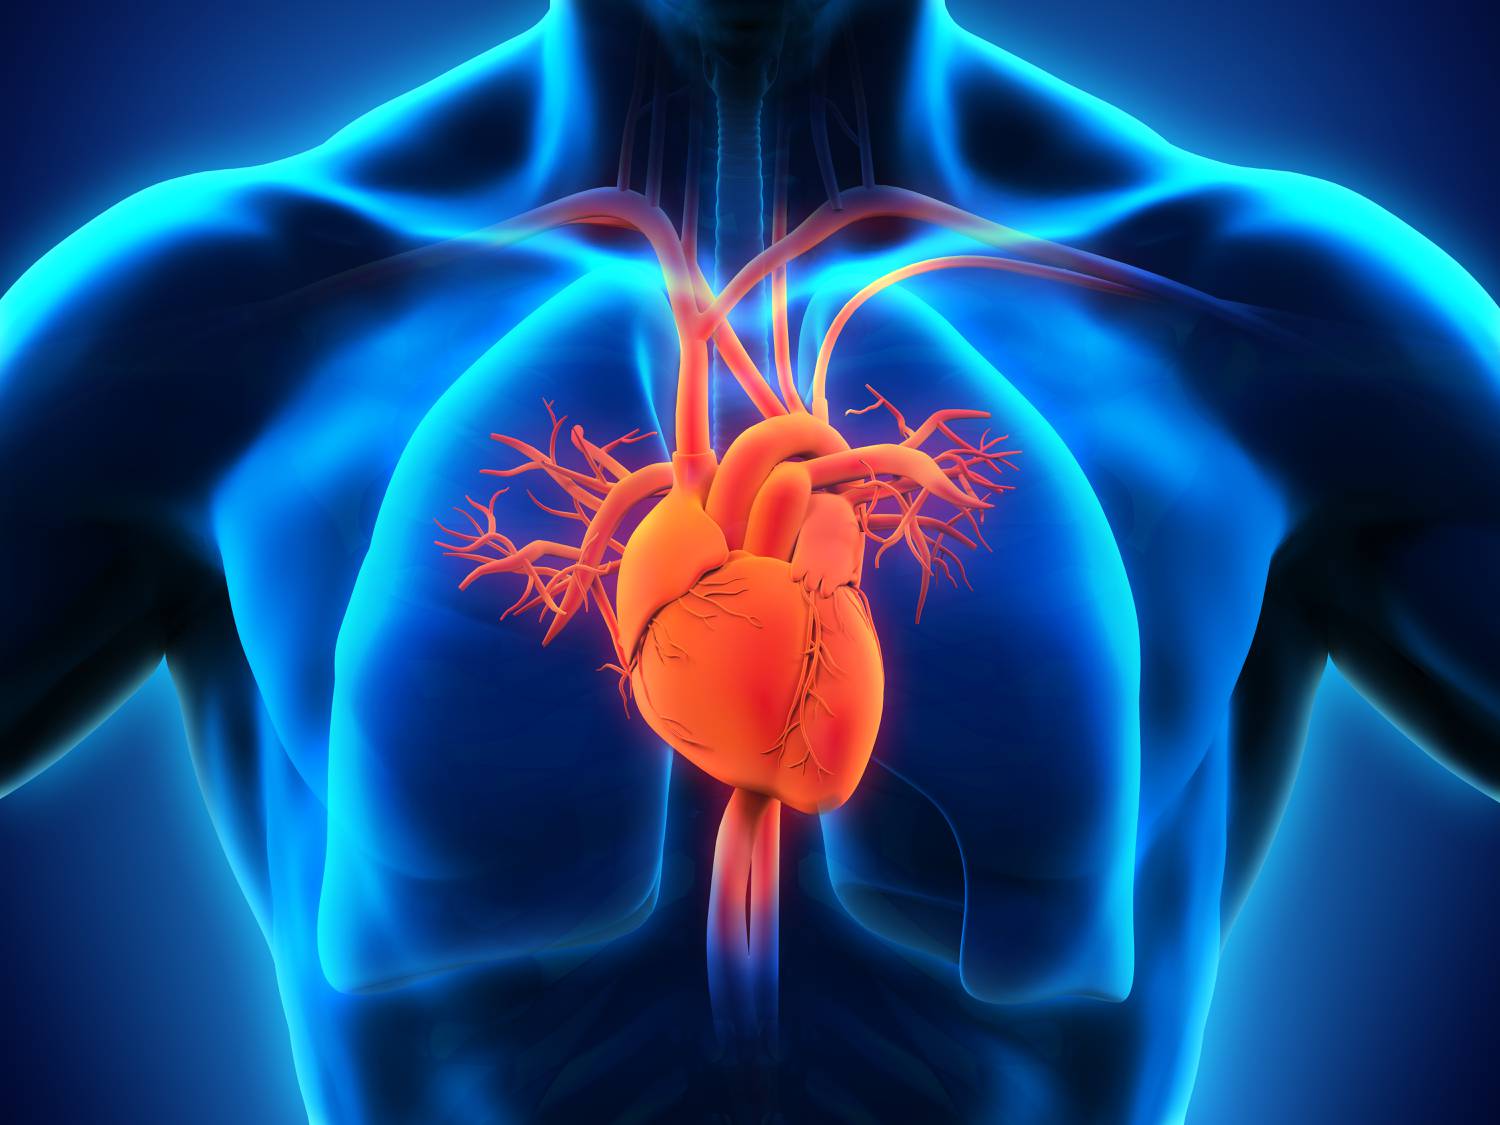 állapotfelmérés szív kvíz modek magas vérnyomás elleni halva